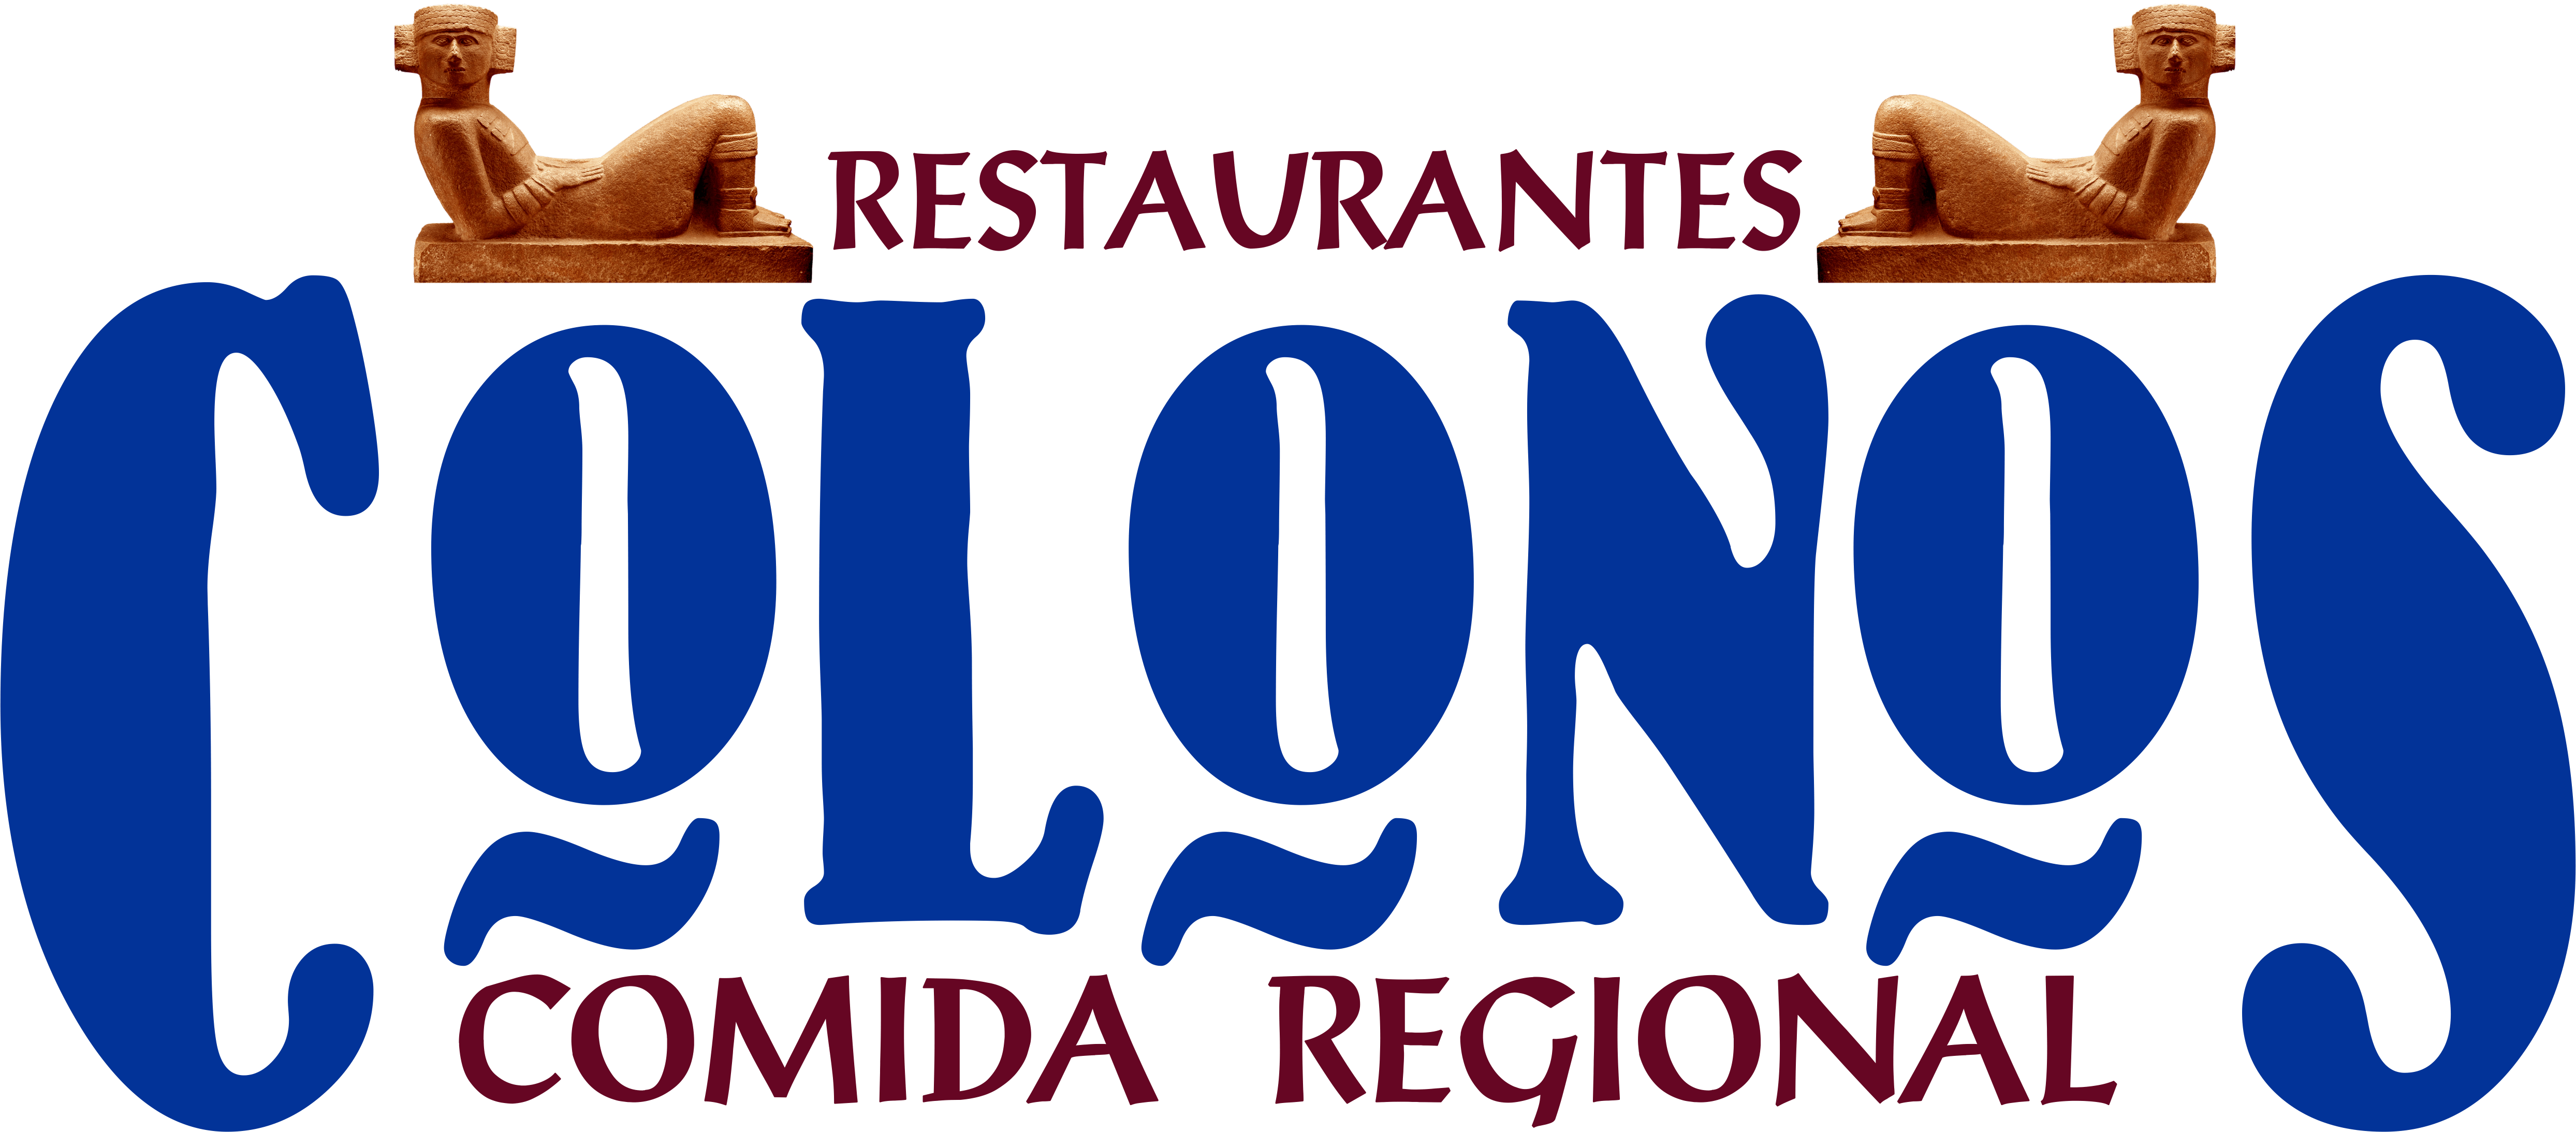 Restaurantes Colonos